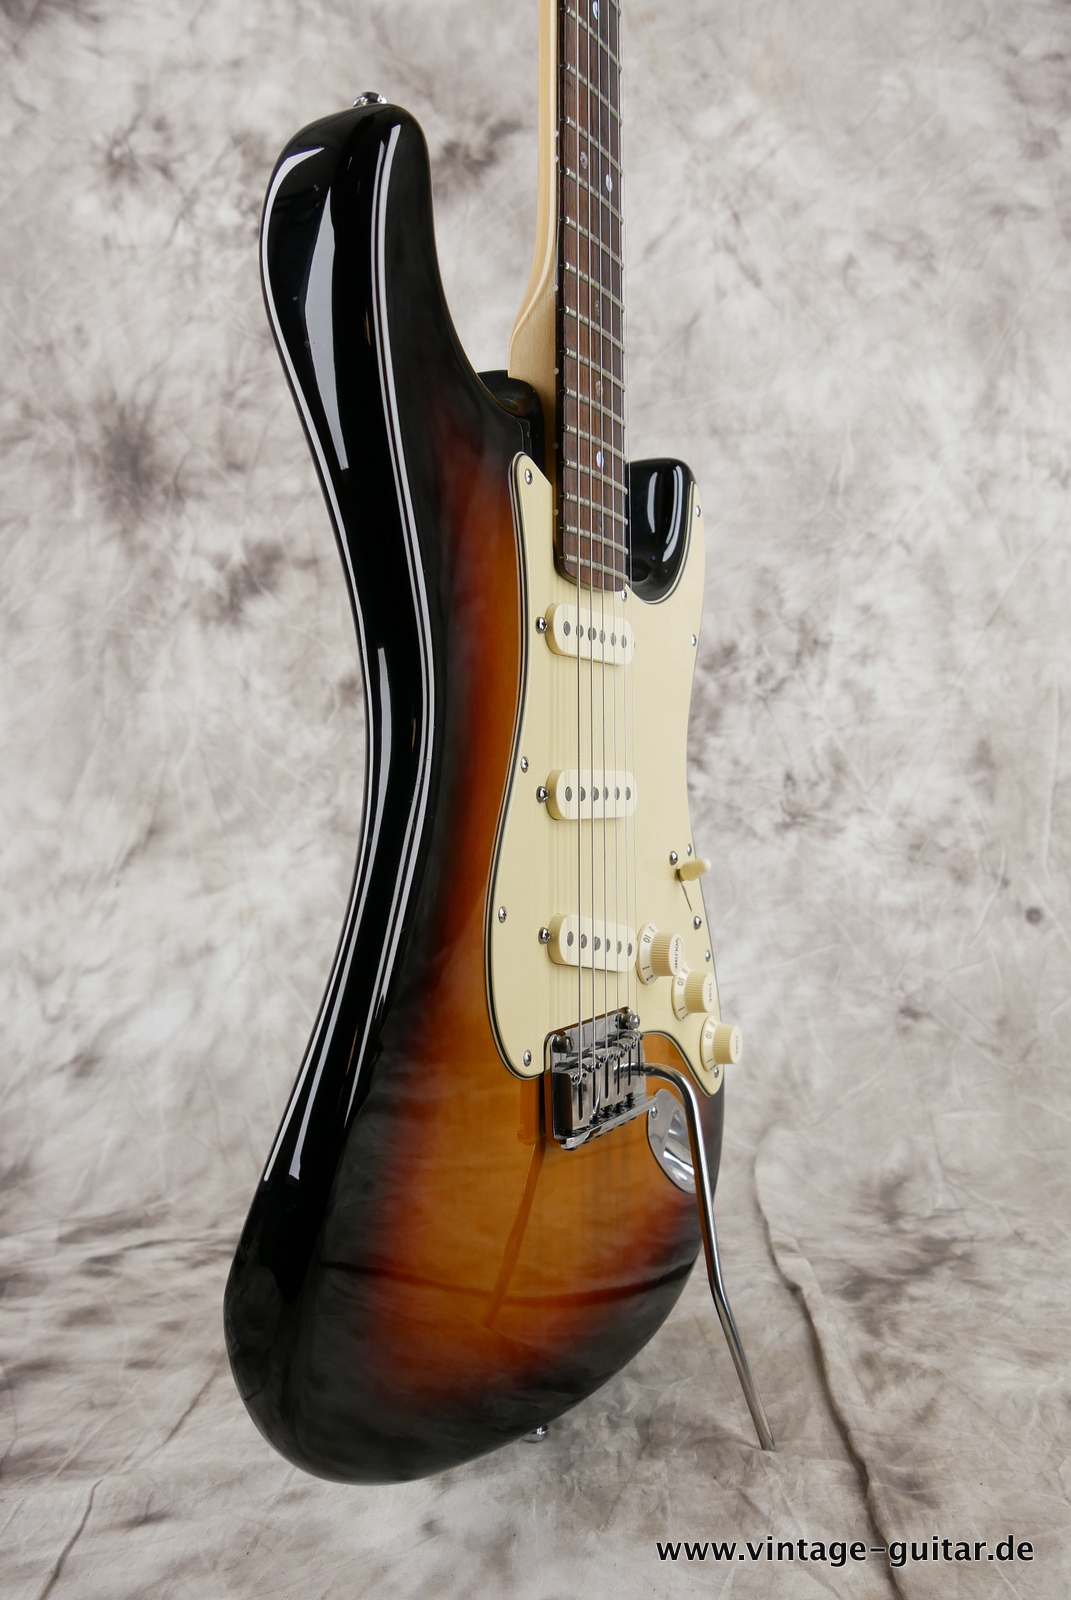 img/vintage/5280/Fender_Startocaster_American_Deluxe_sunburst_samarium-cobalt-noiseless_tremolo_2005-009.JPG